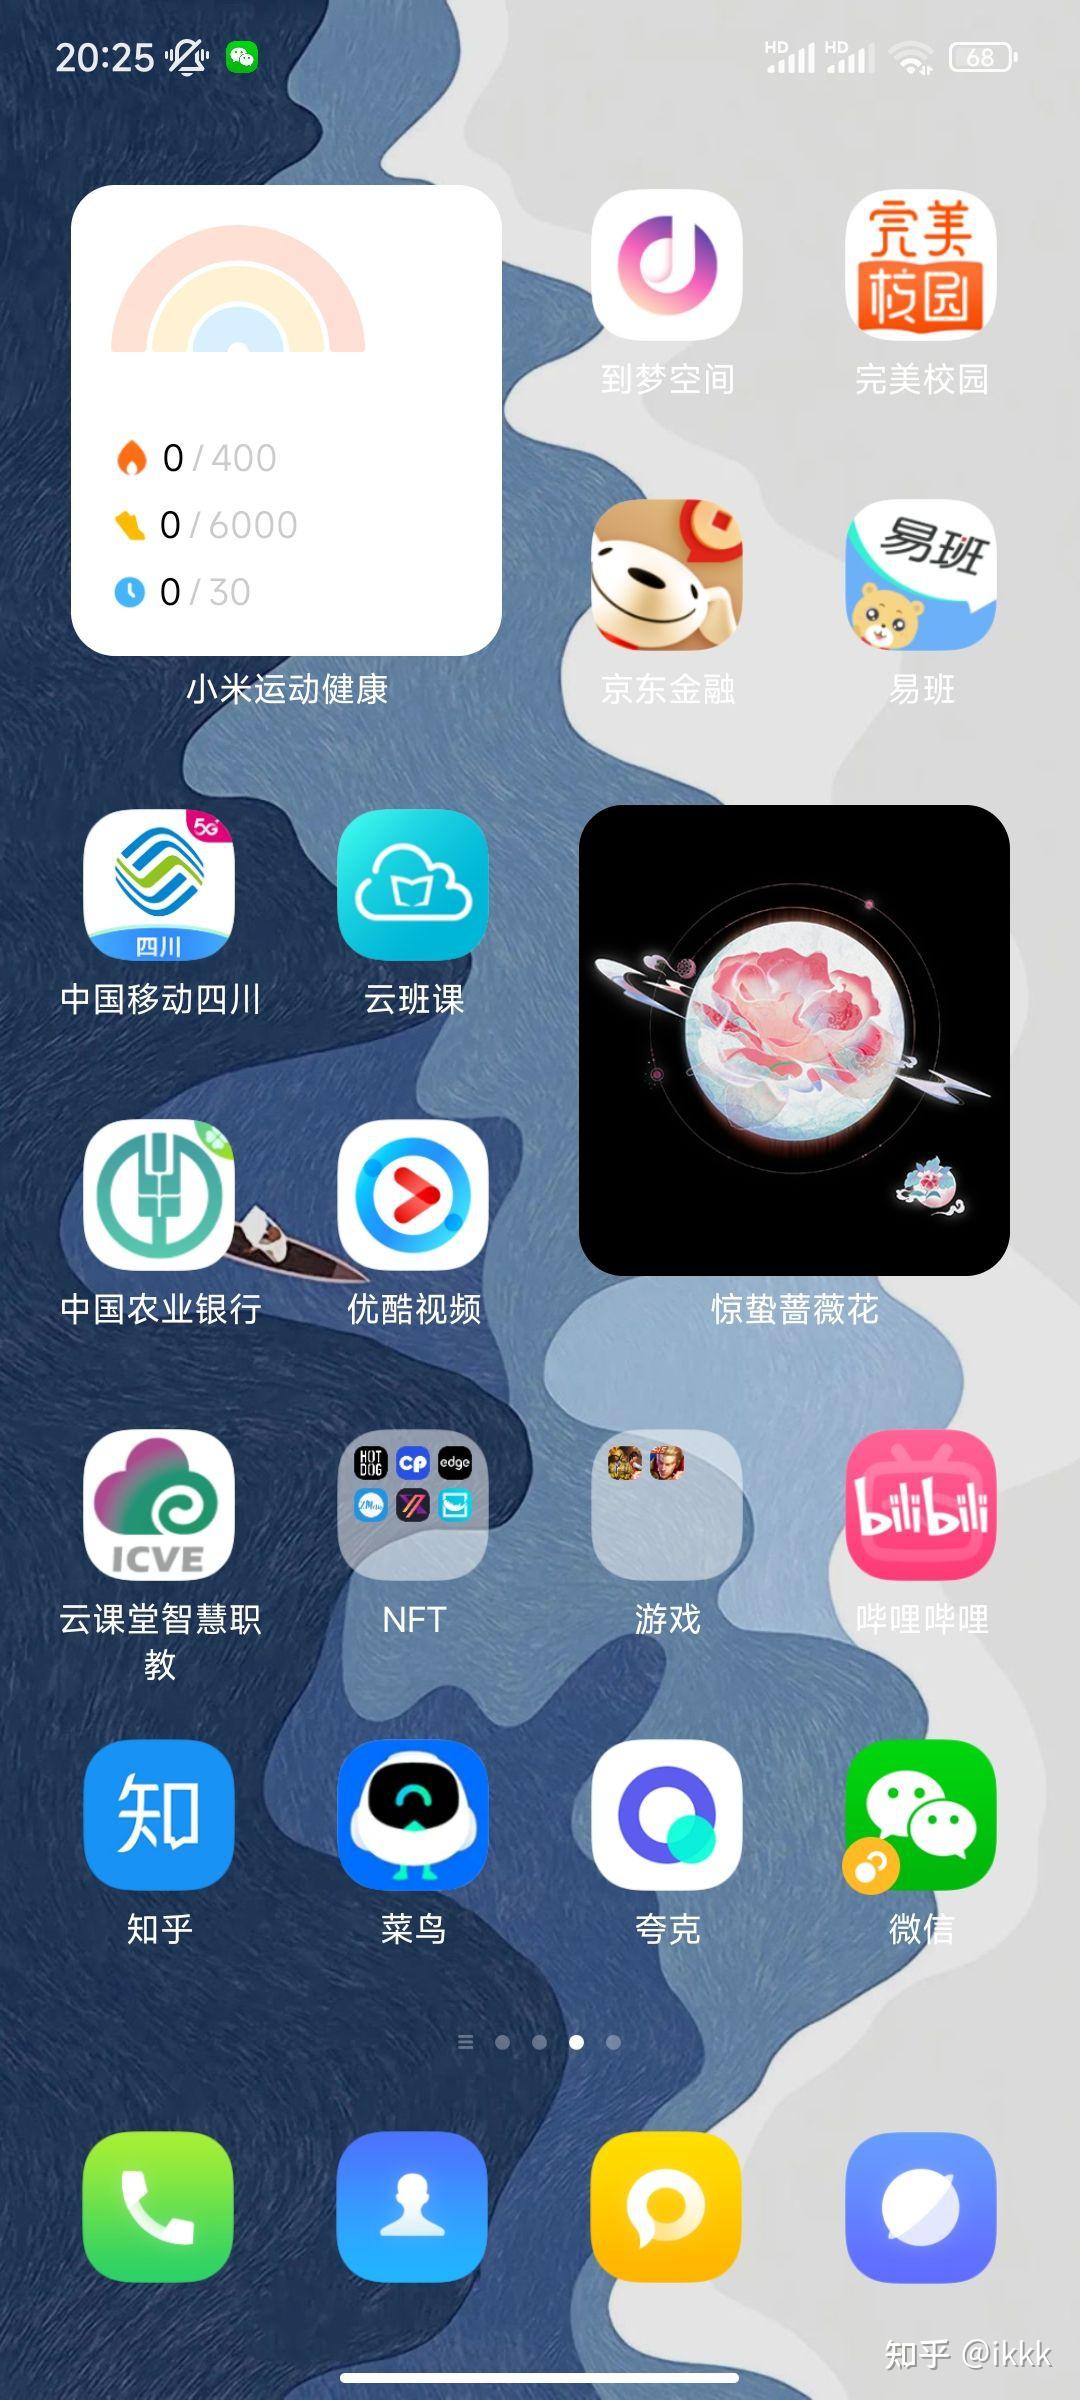 iOS14桌面布局及素材